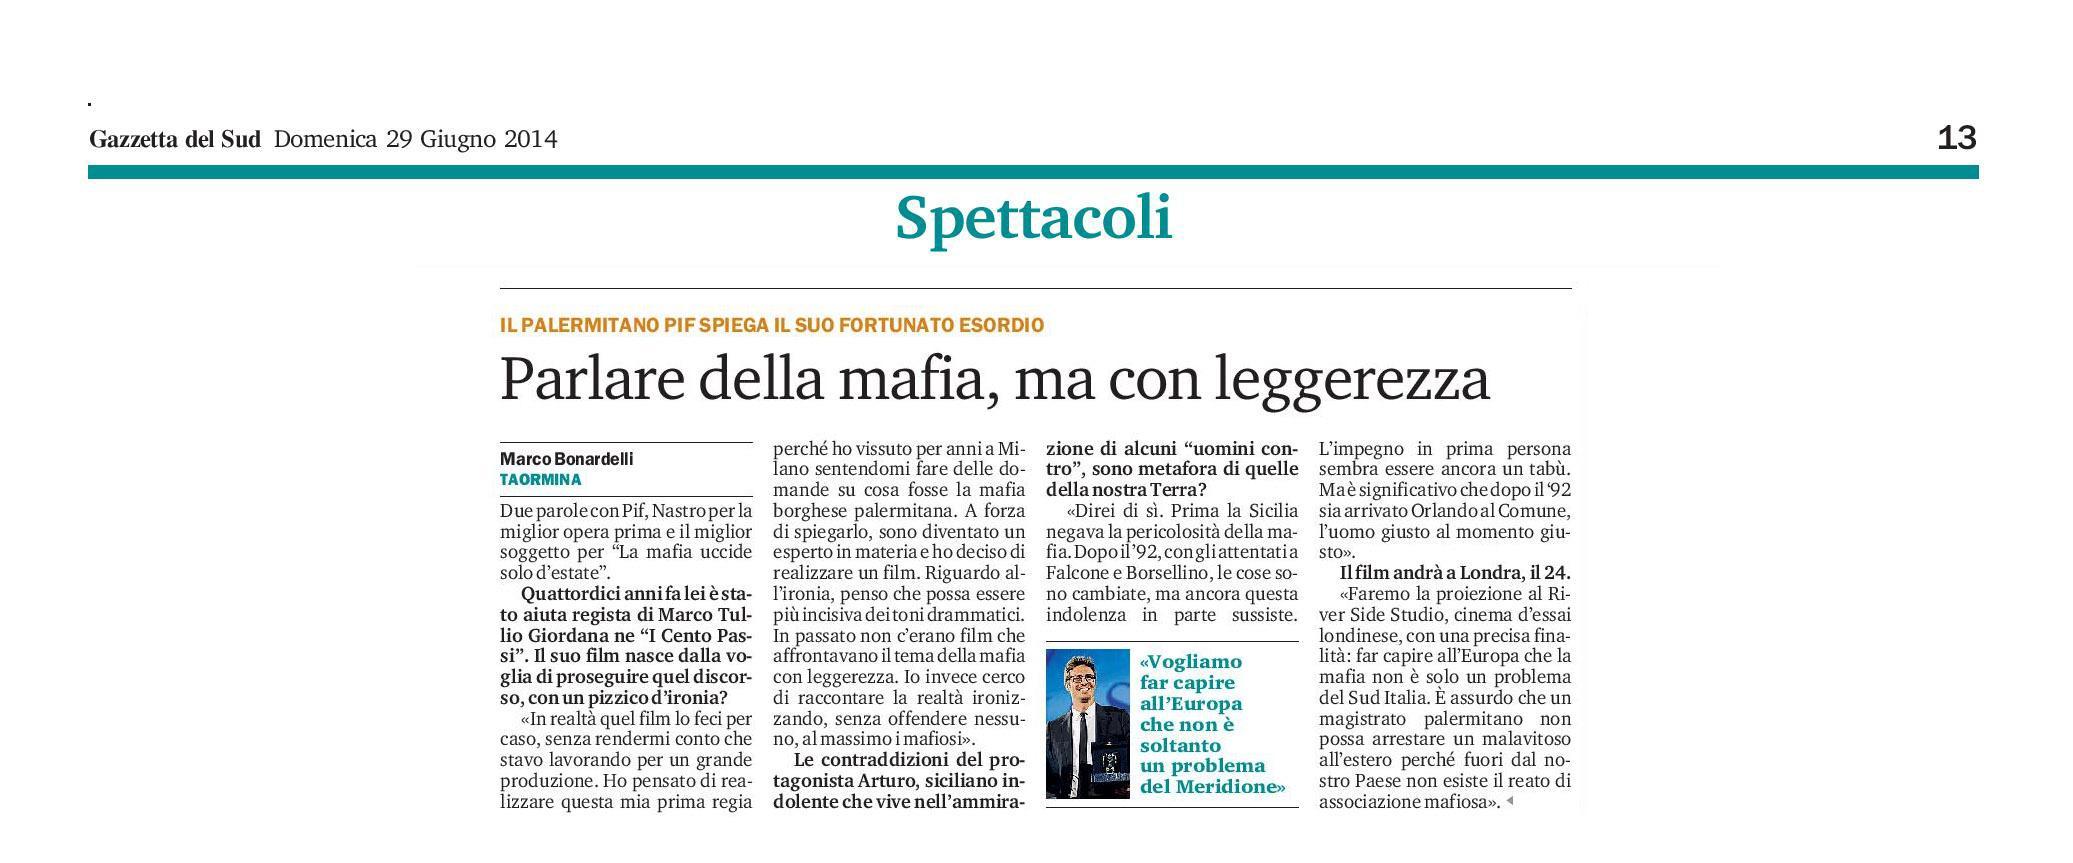 68 - Pif ai Nastri d argento 2014 - Parlare di mafia ma con leggerezza - 29 giugno 2014.jpg